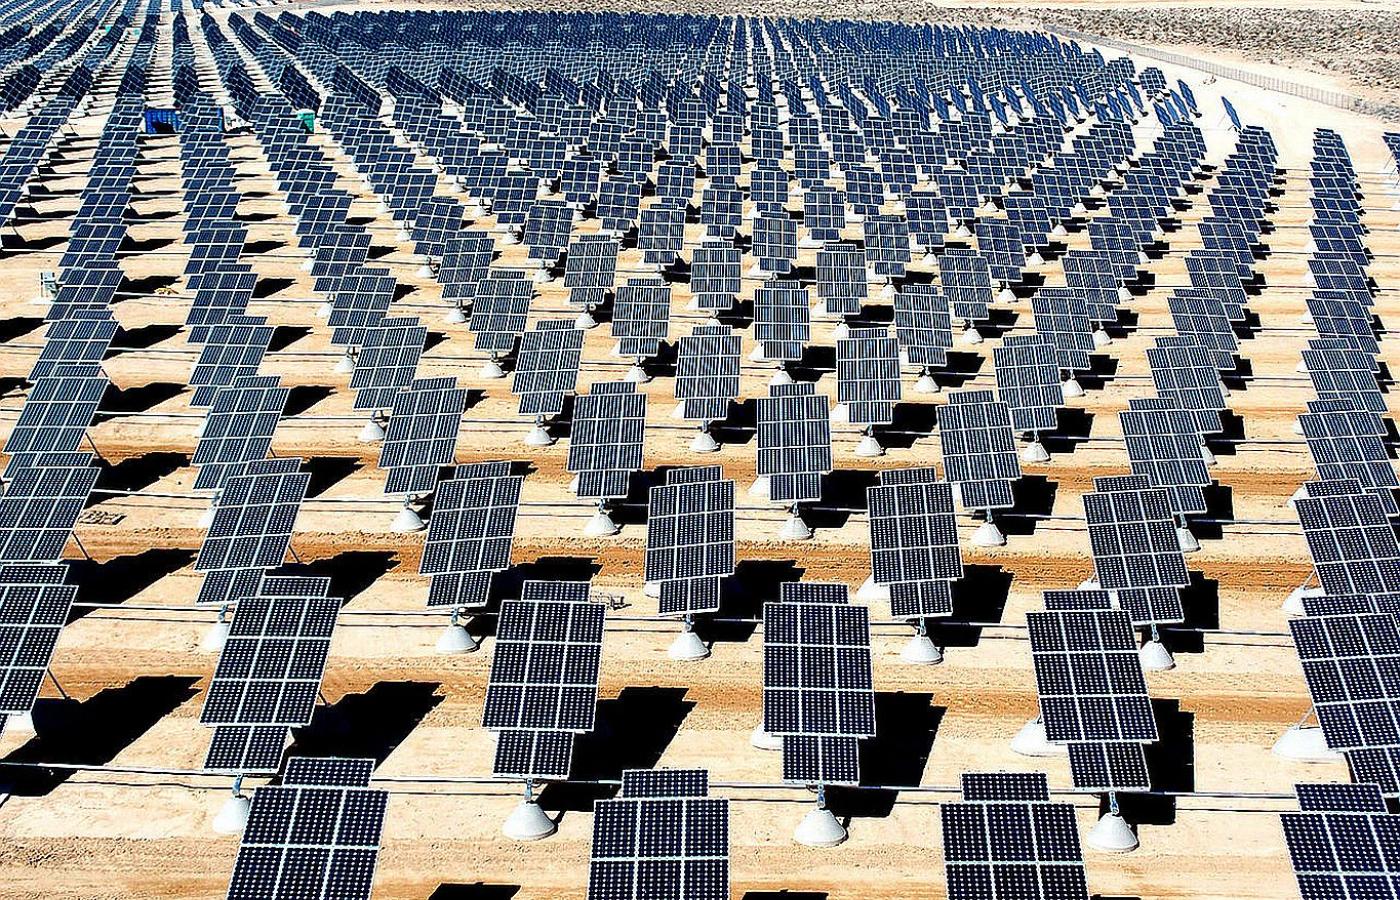 Elektrownia słoneczna w bazie Nellis Air Force w Newadzie. Amerykanie do 2020 roku stworzą technologię pozyskiwania energii ze słońca, która da 1 wat energii za cenę znacznie poniżej 1 dolara . U.S. Department of Energy przeznaczył na ten cel 25 mln $.